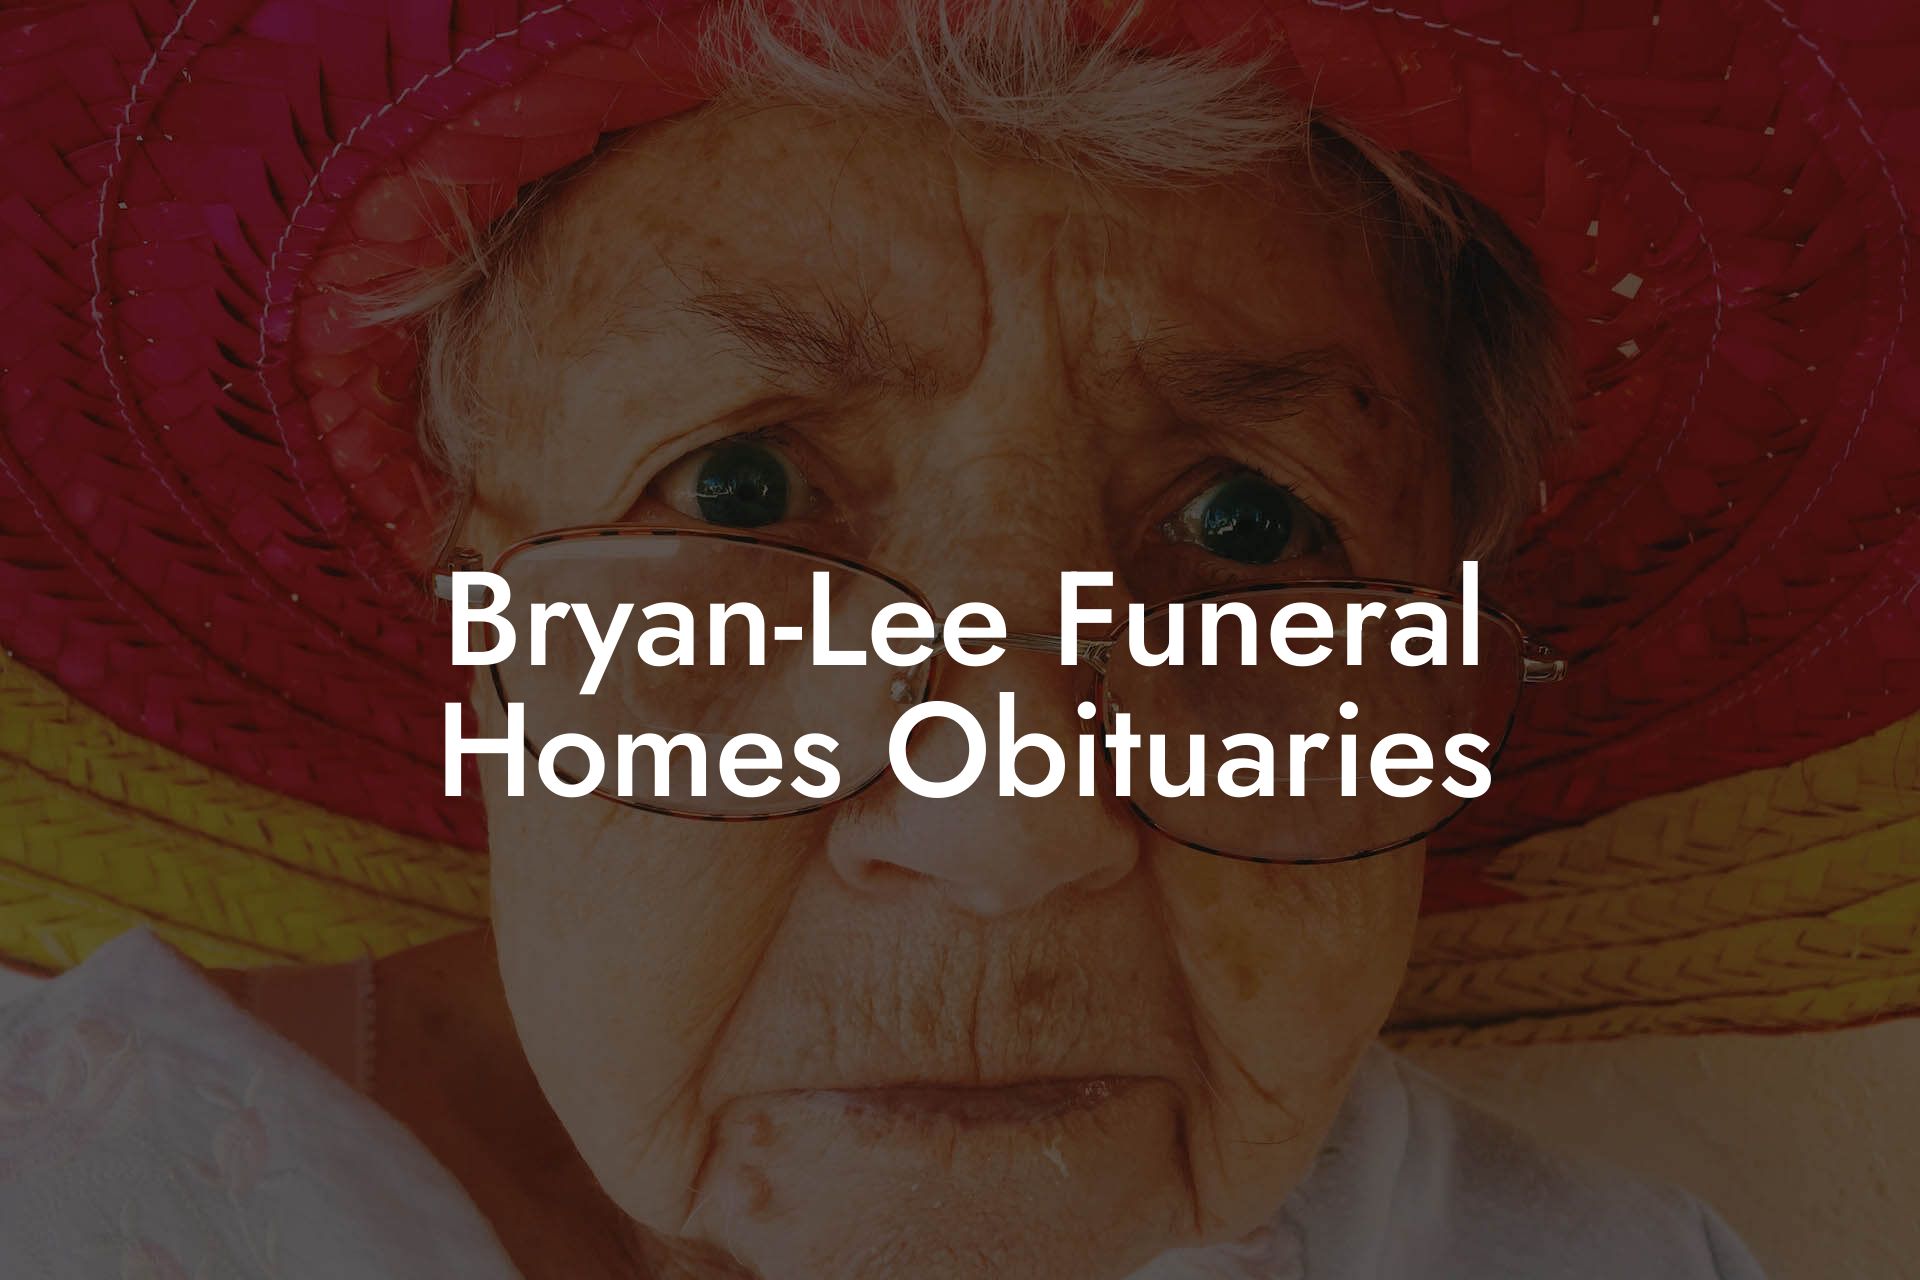 Bryan-Lee Funeral Homes Obituaries